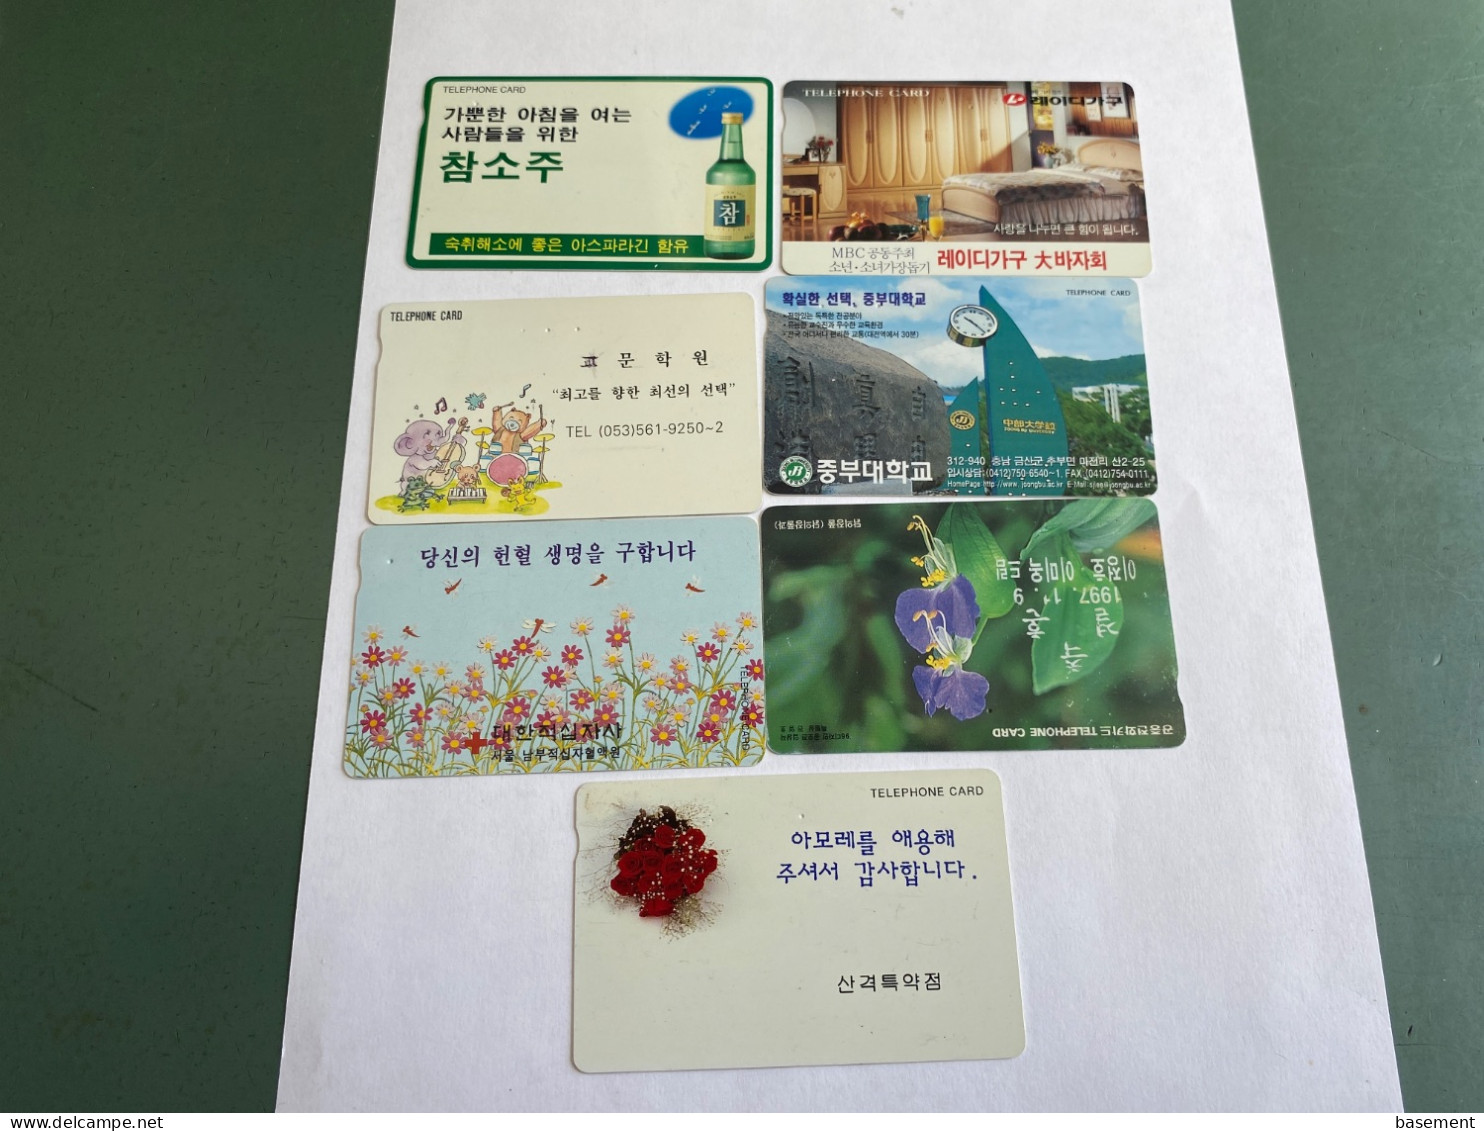 - 5 - South Korea 7 Different Phonecards - Corée Du Sud